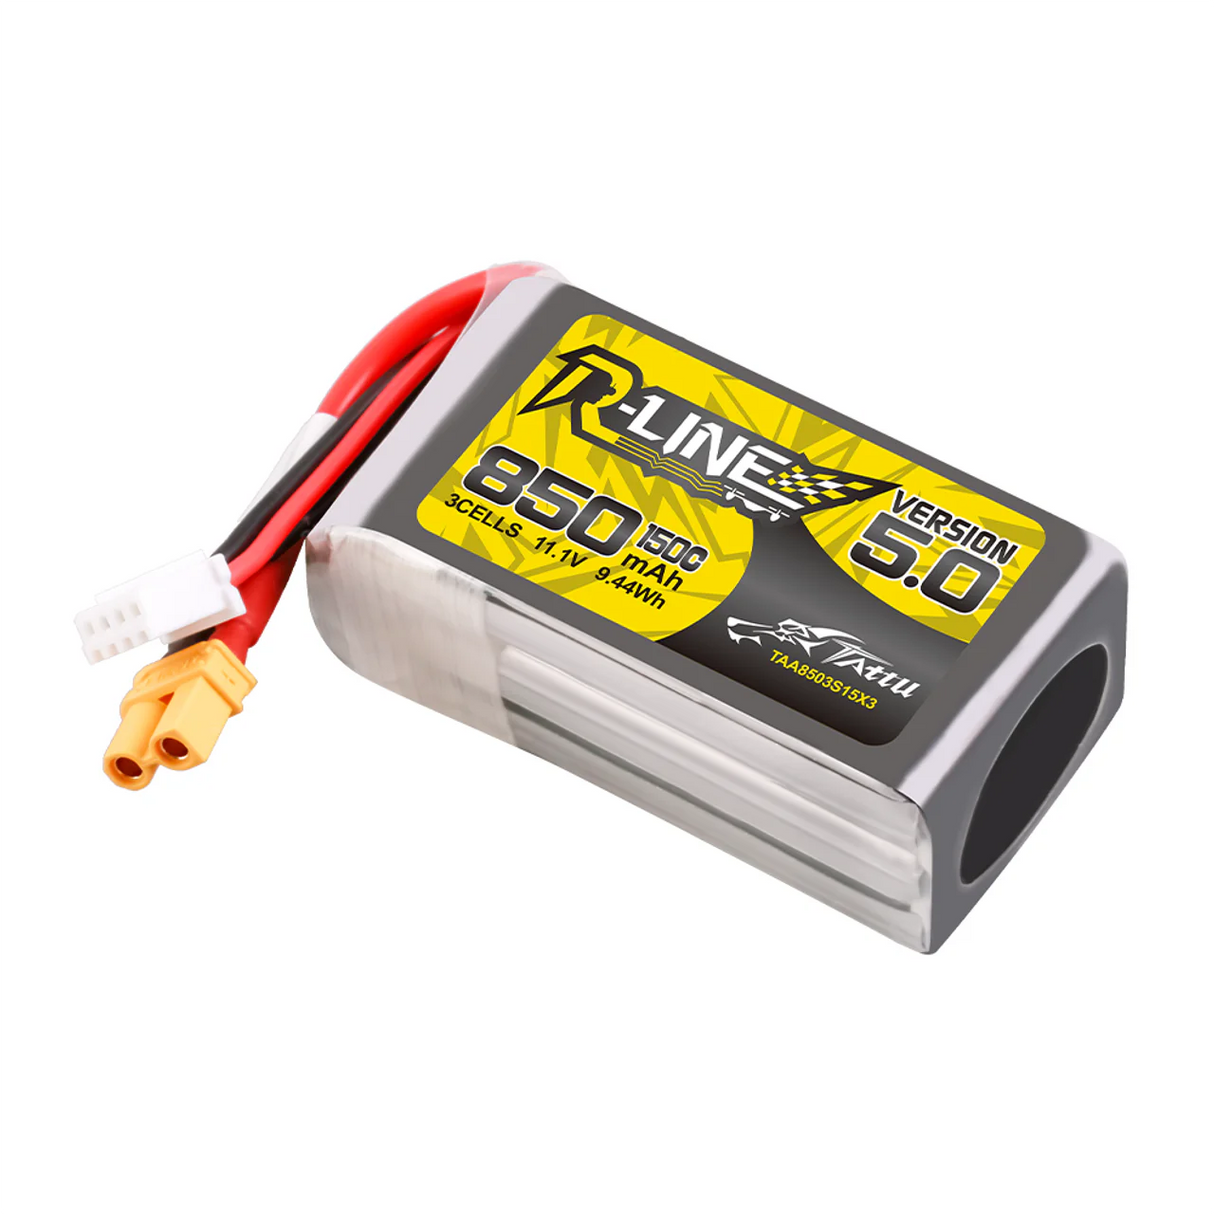 Tattu R-Line Version 5.0 850mAh 3S 11.1V 150C Lipo Battery Pack With XT30U-F Plug - DroneDynamics.ca